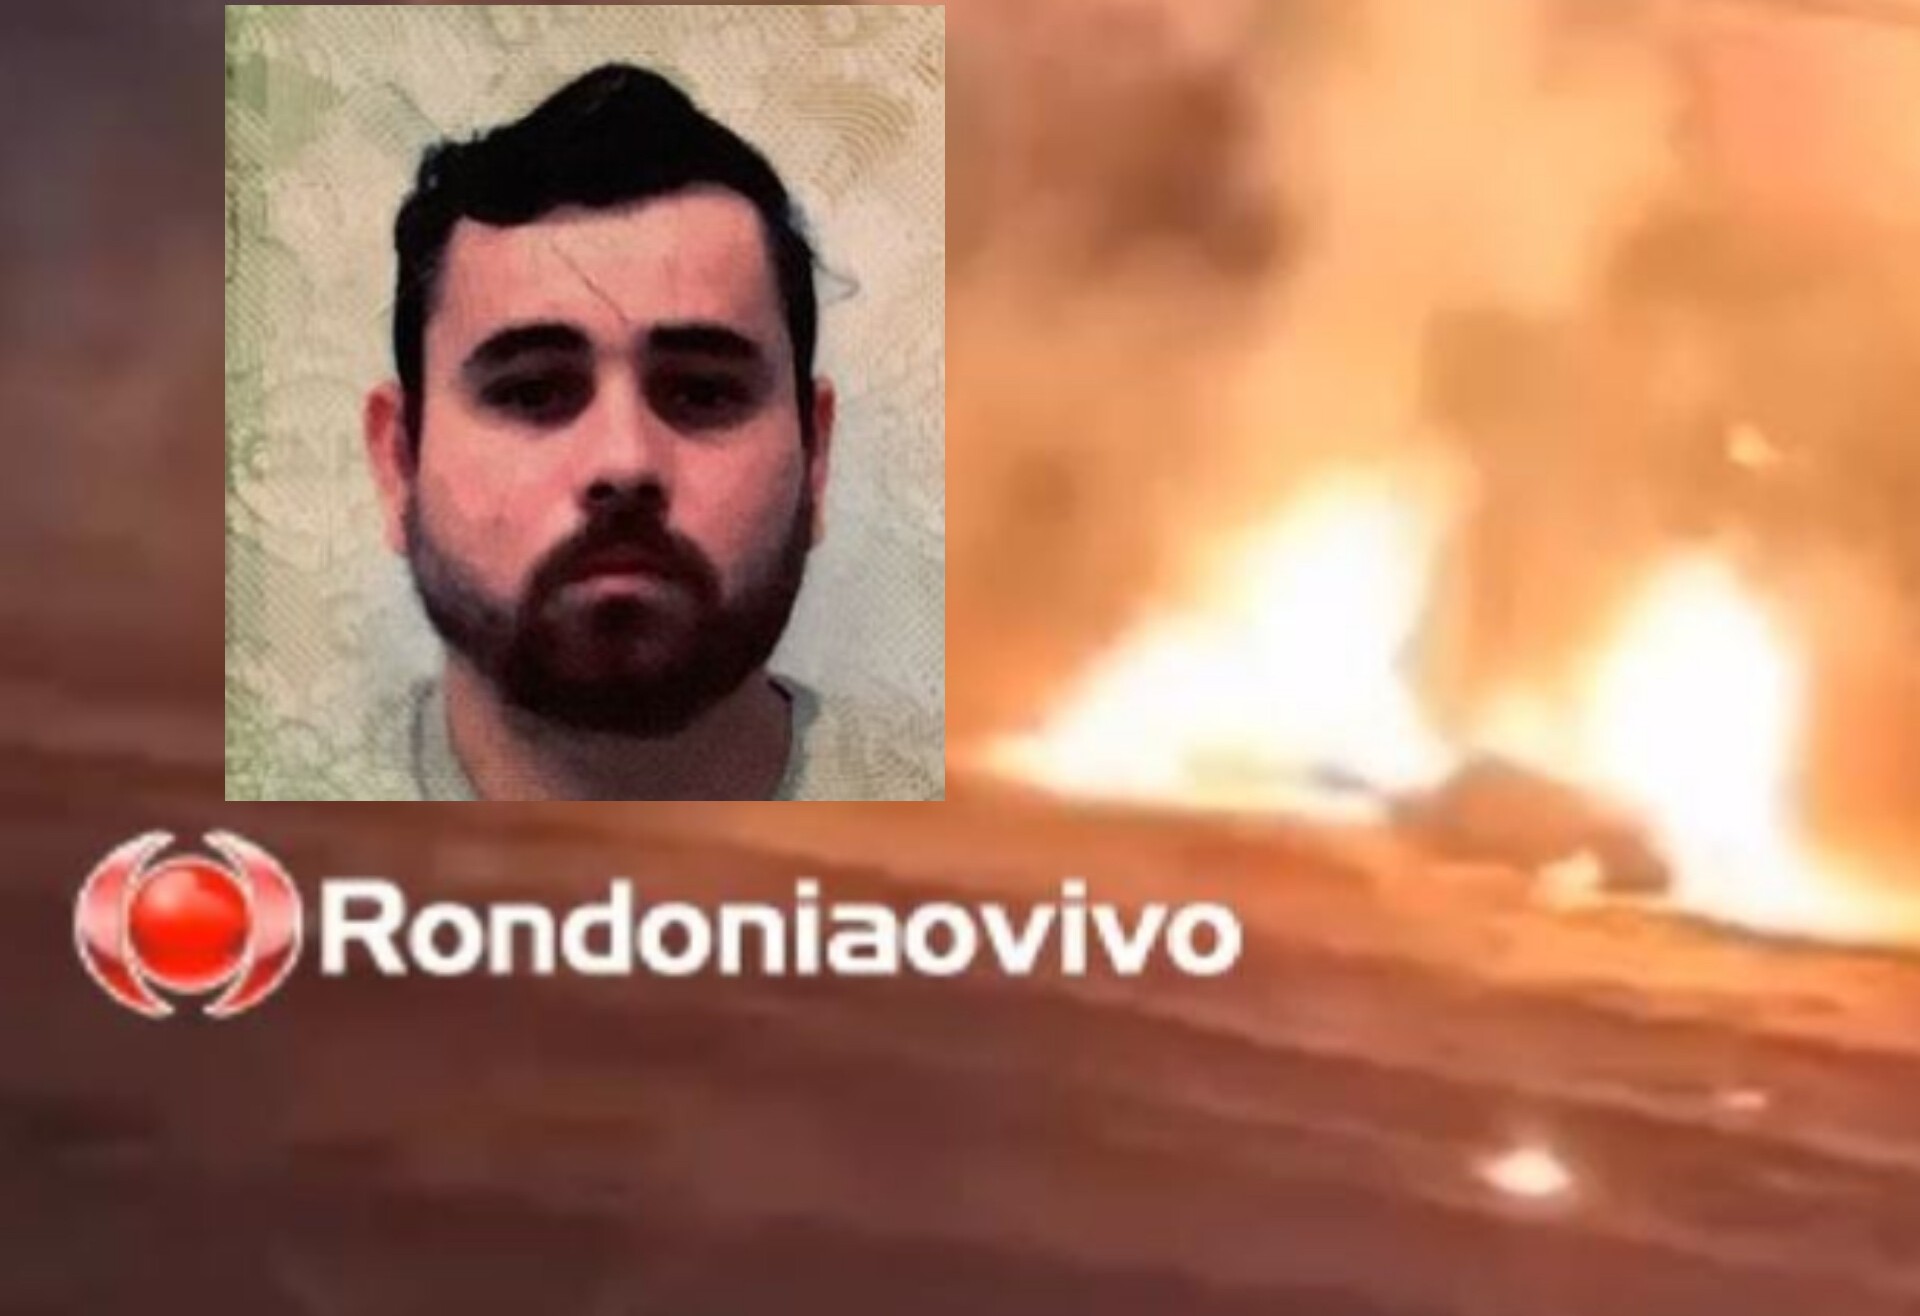 EXPOALTO - VÍDEO: Blaster pirotécnico morre após ser atingido por fogos em exposição 